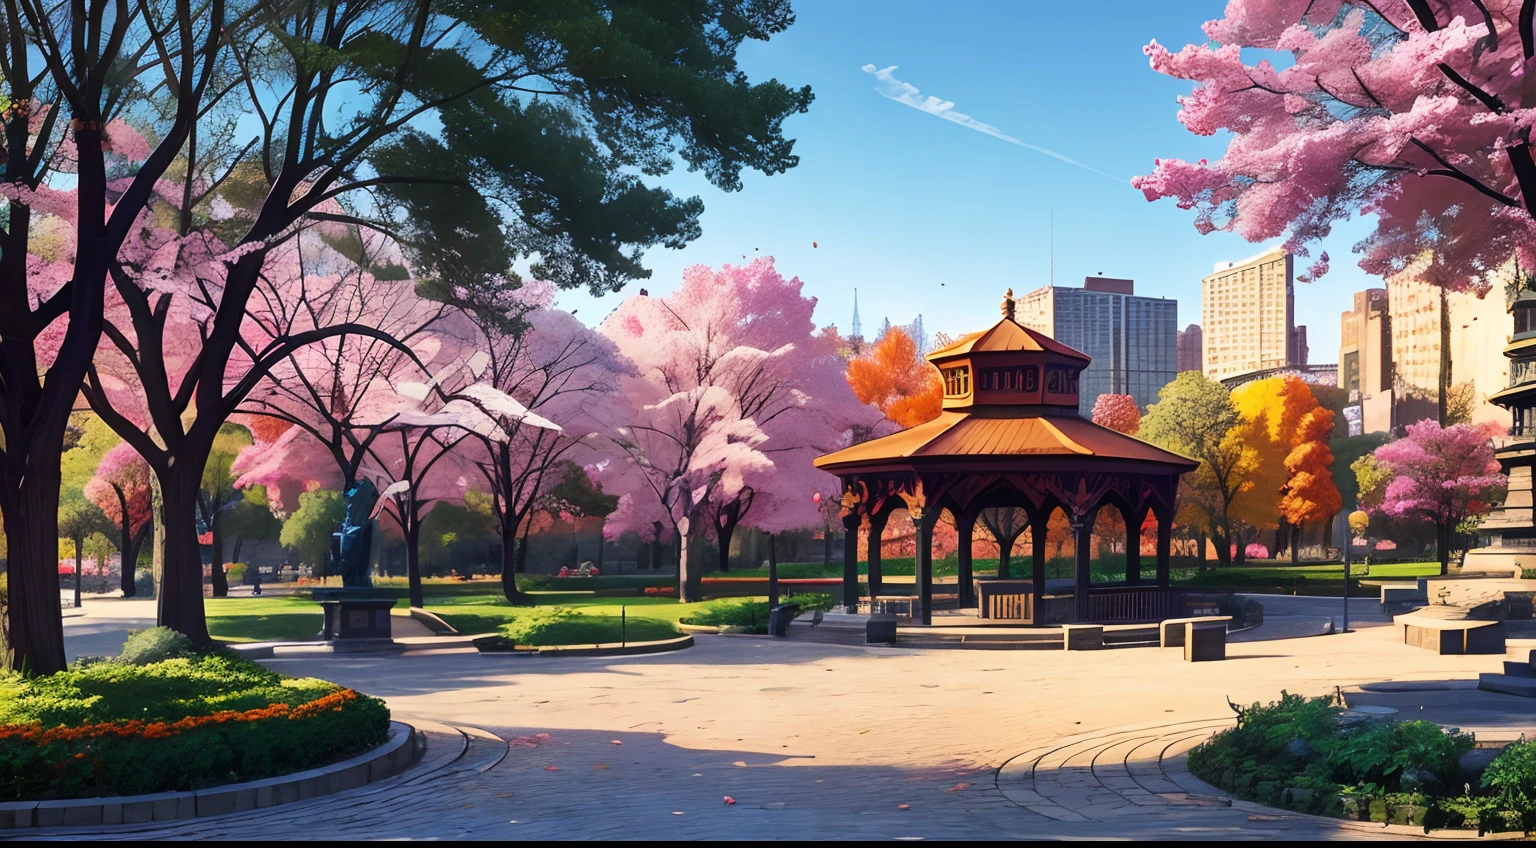 (最好的质量:1.0), a vibrant park in the middle of a 明亮的 cityscape, 树木, 长椅, 1 座雕像, 1 个凉亭, 鹅卵石小路, 漫画风格, 明亮的